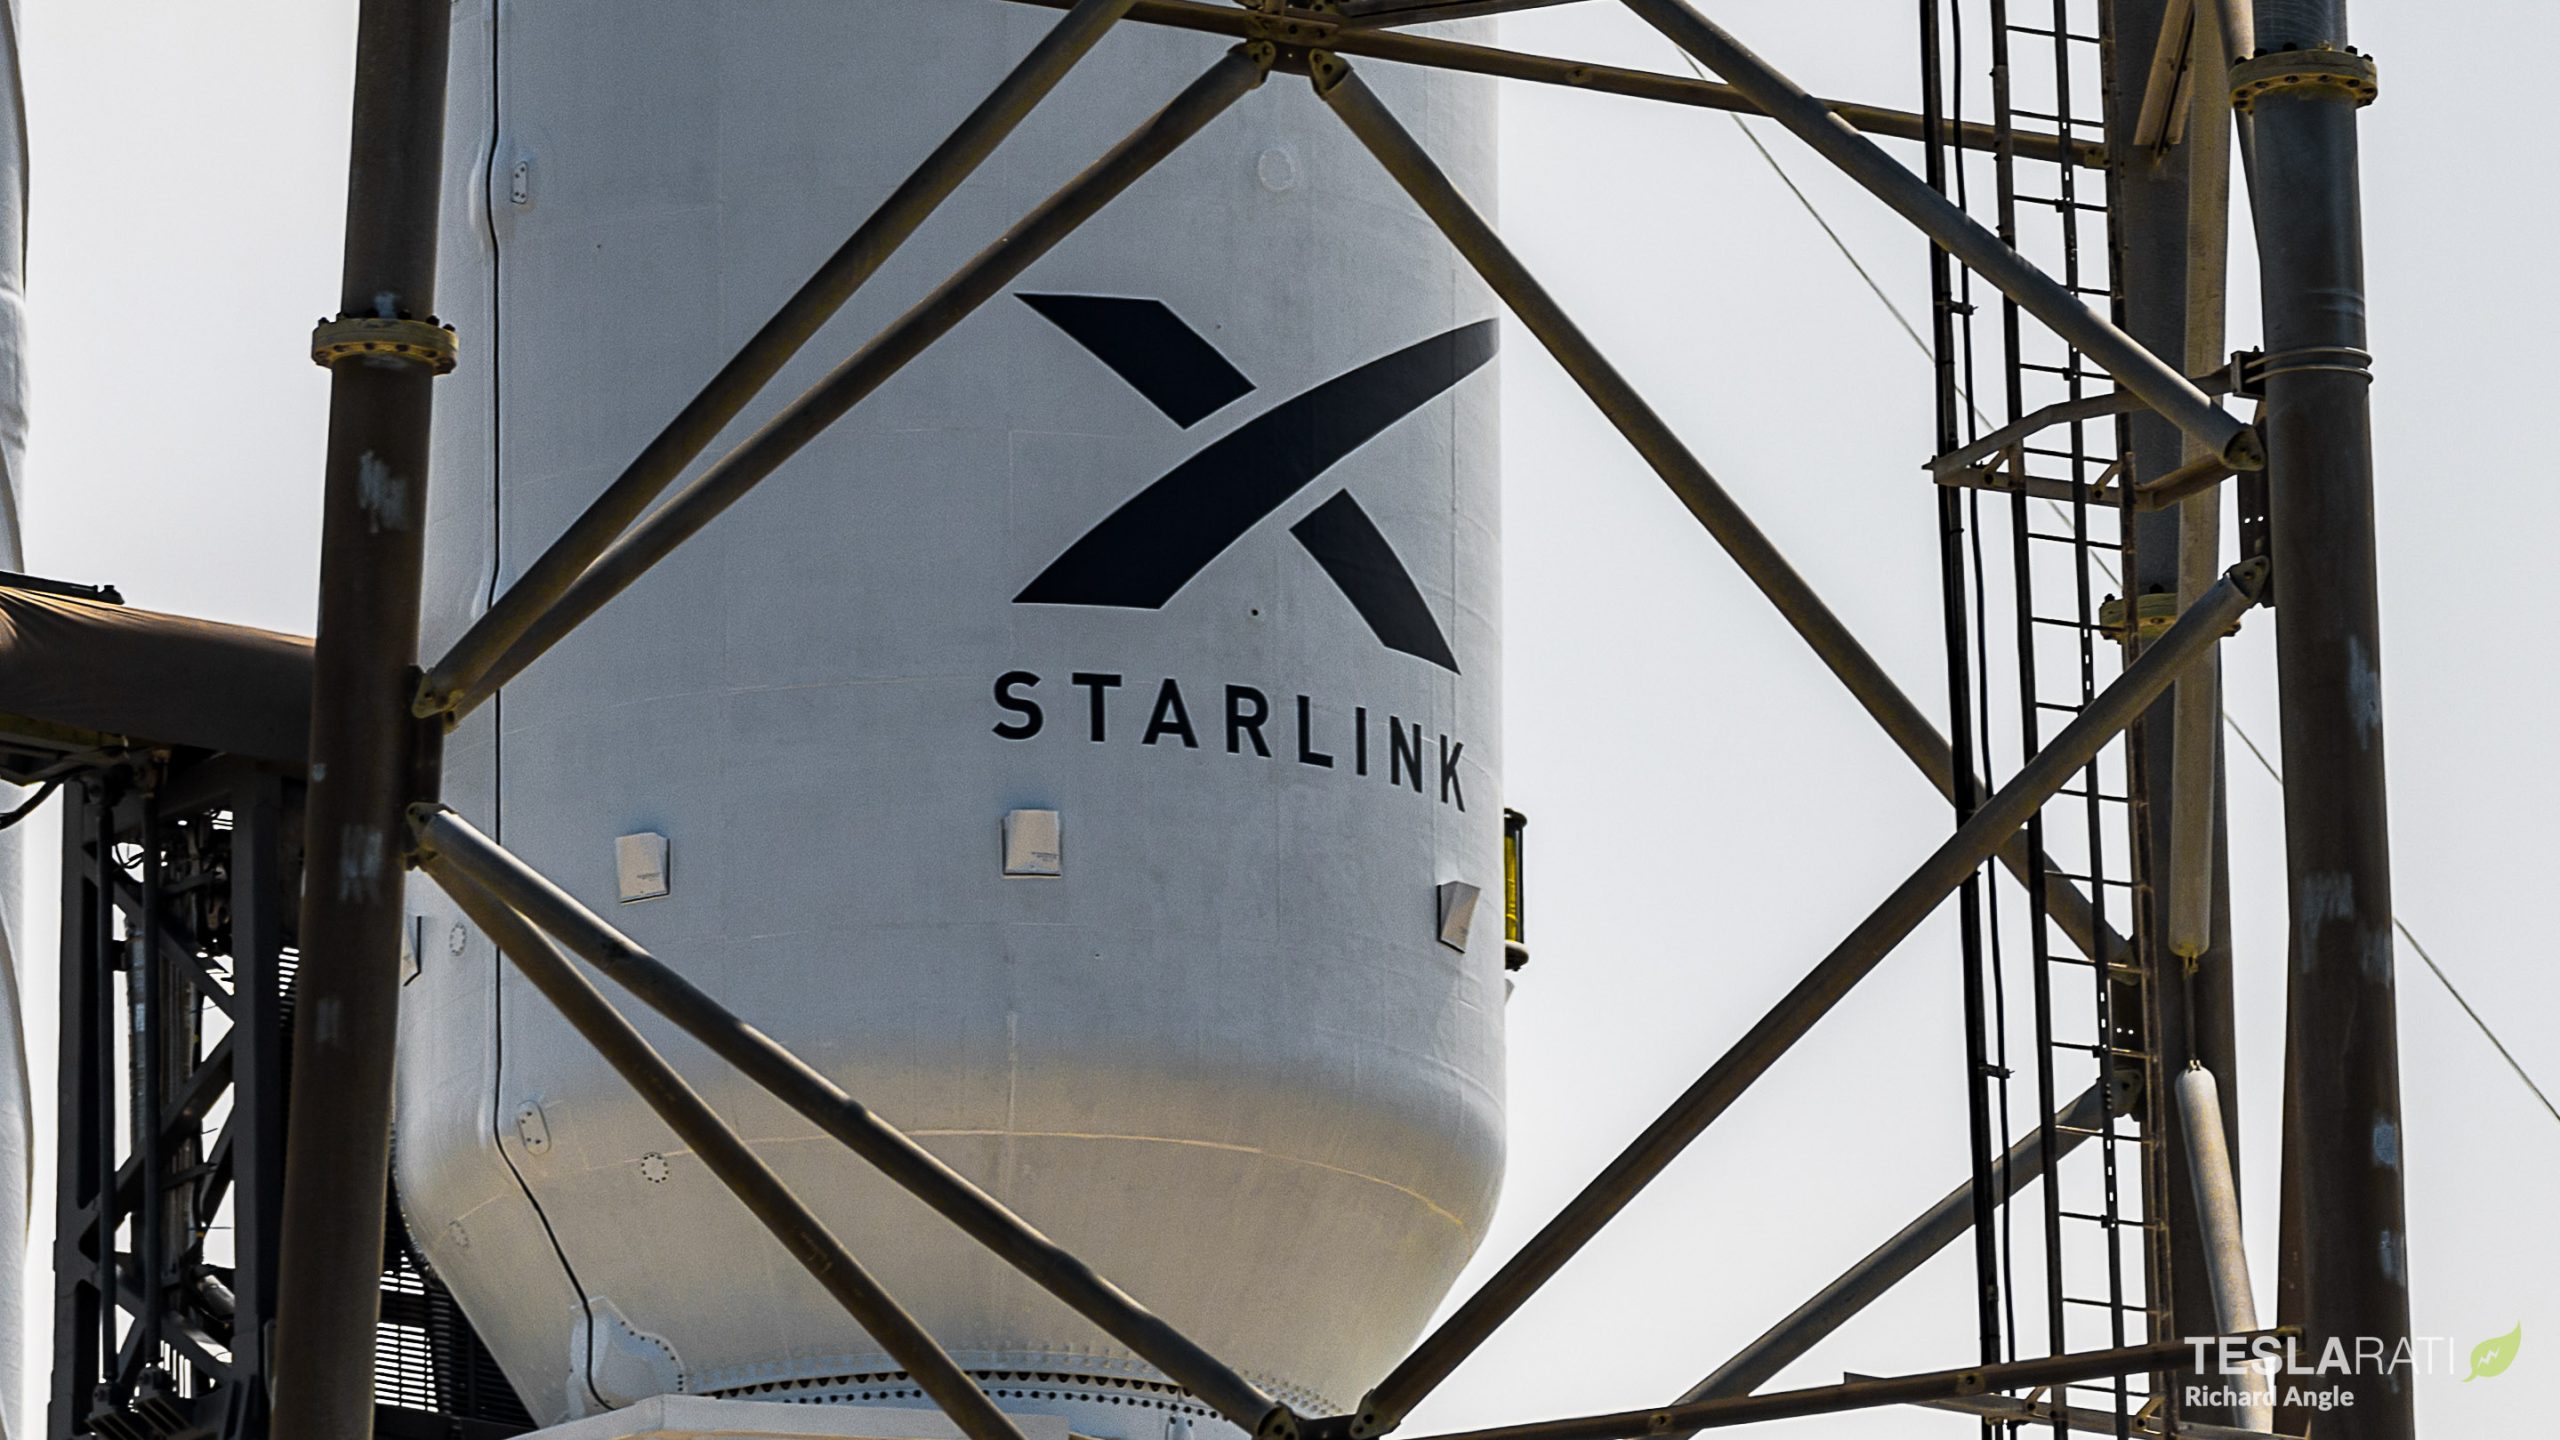 StarlinkFairing